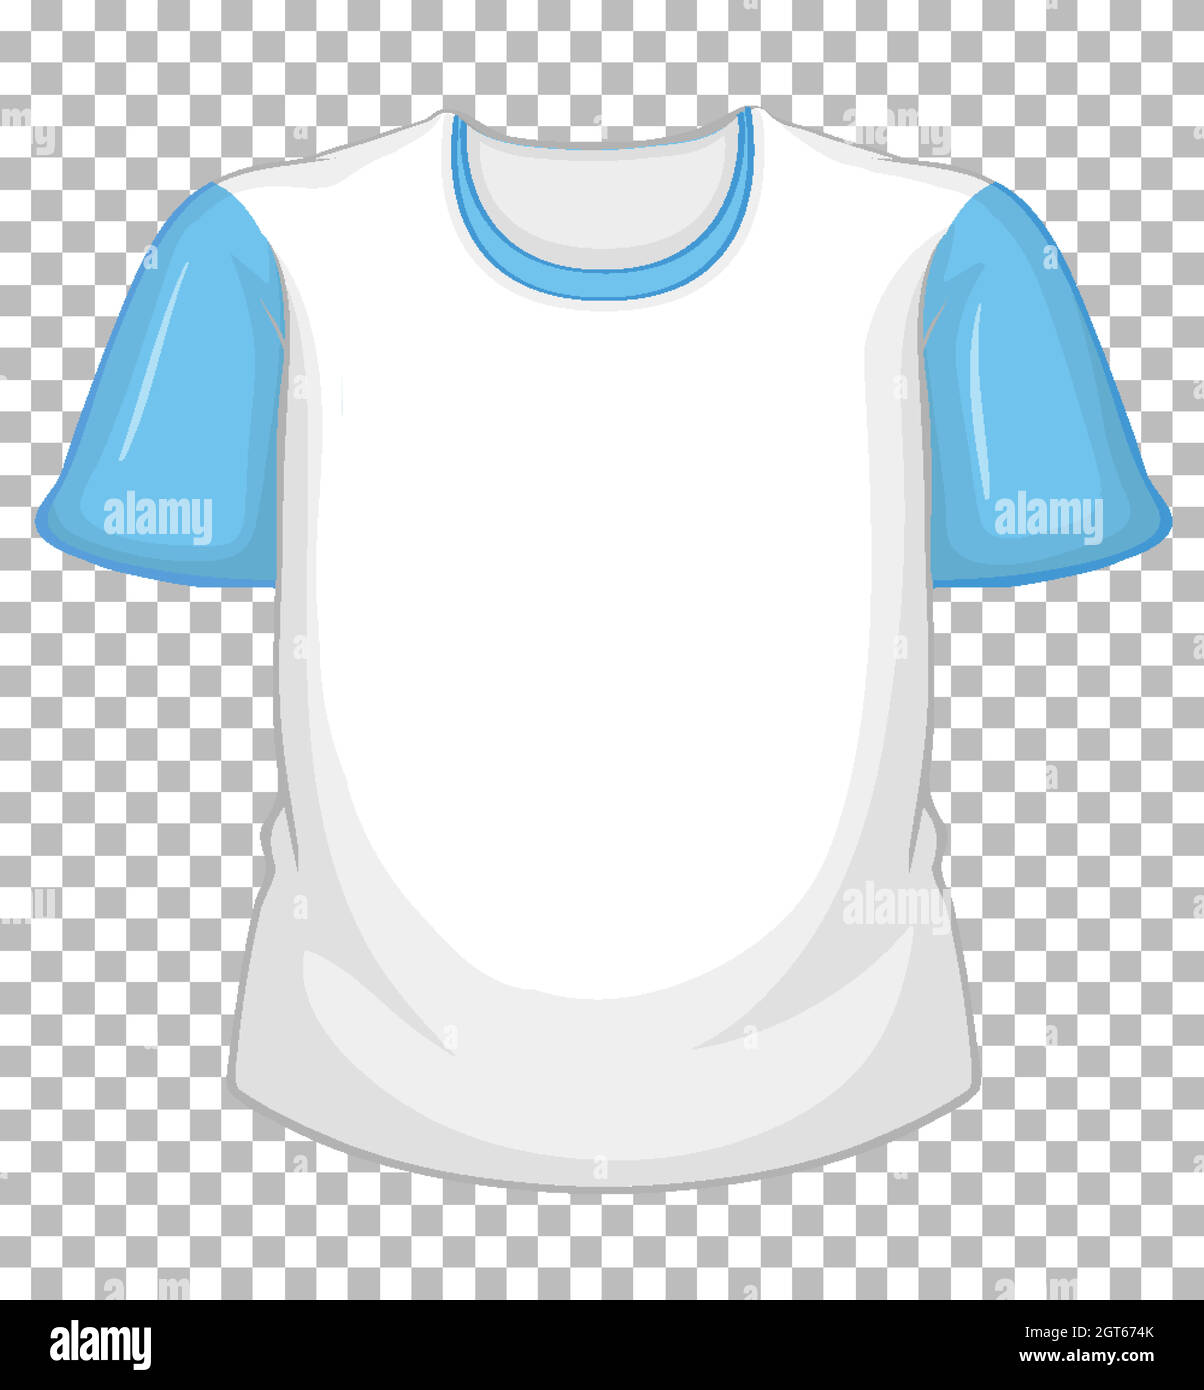 T-shirt blanc vierge avec manches courtes bleues sur transparent Illustration de Vecteur